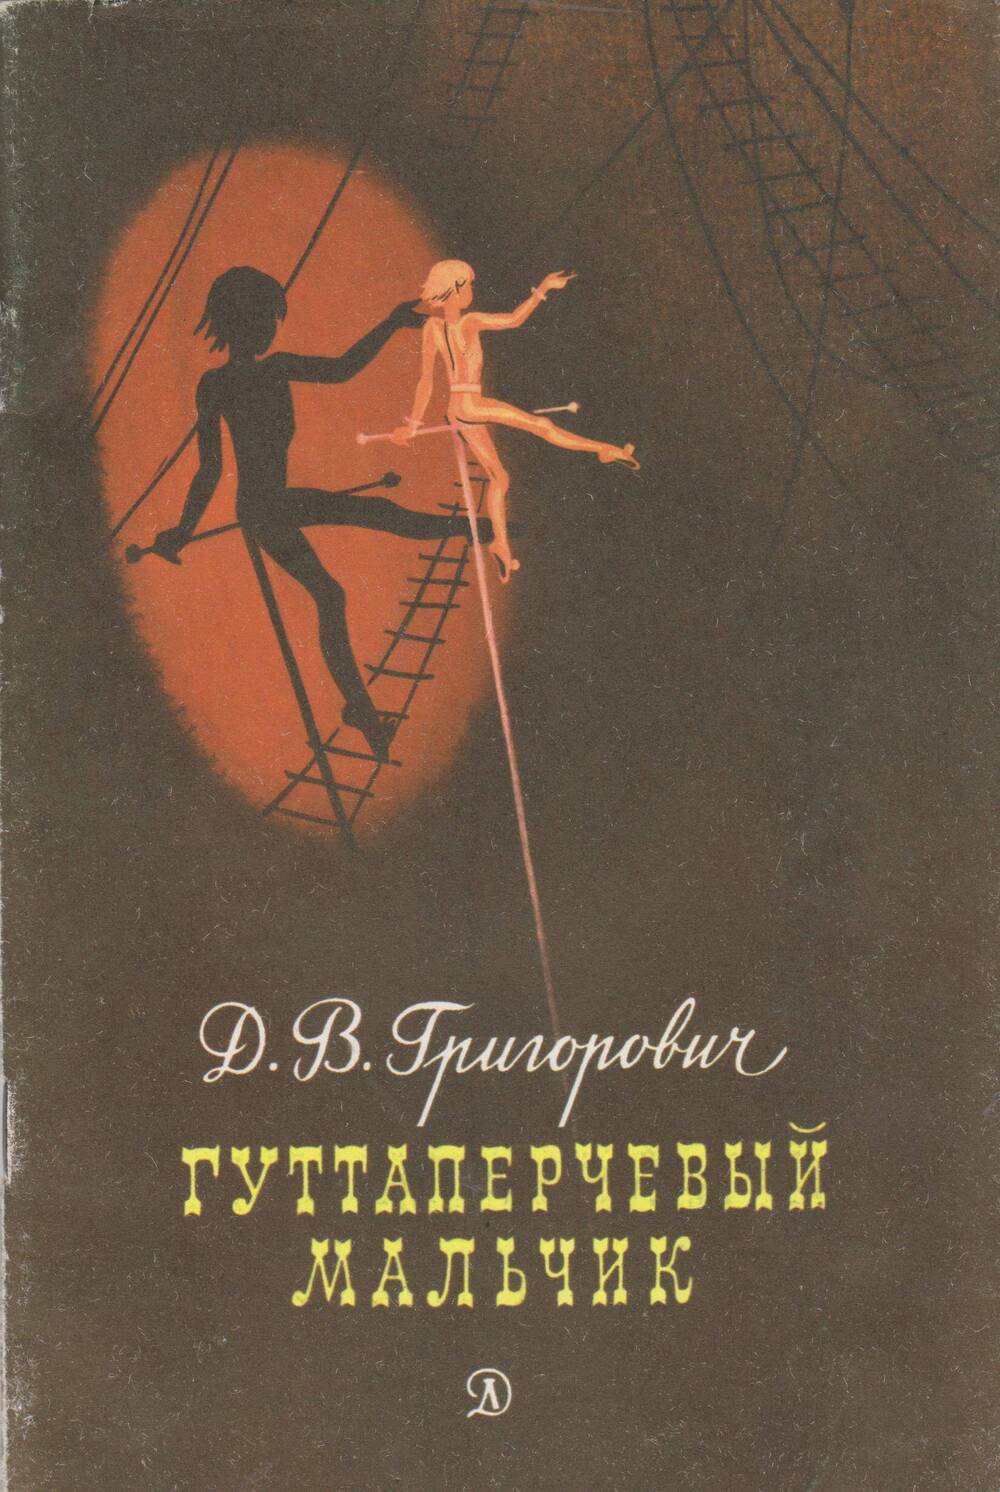 Книга «Гуттаперчевый мальчик». Автор Д. Григорович